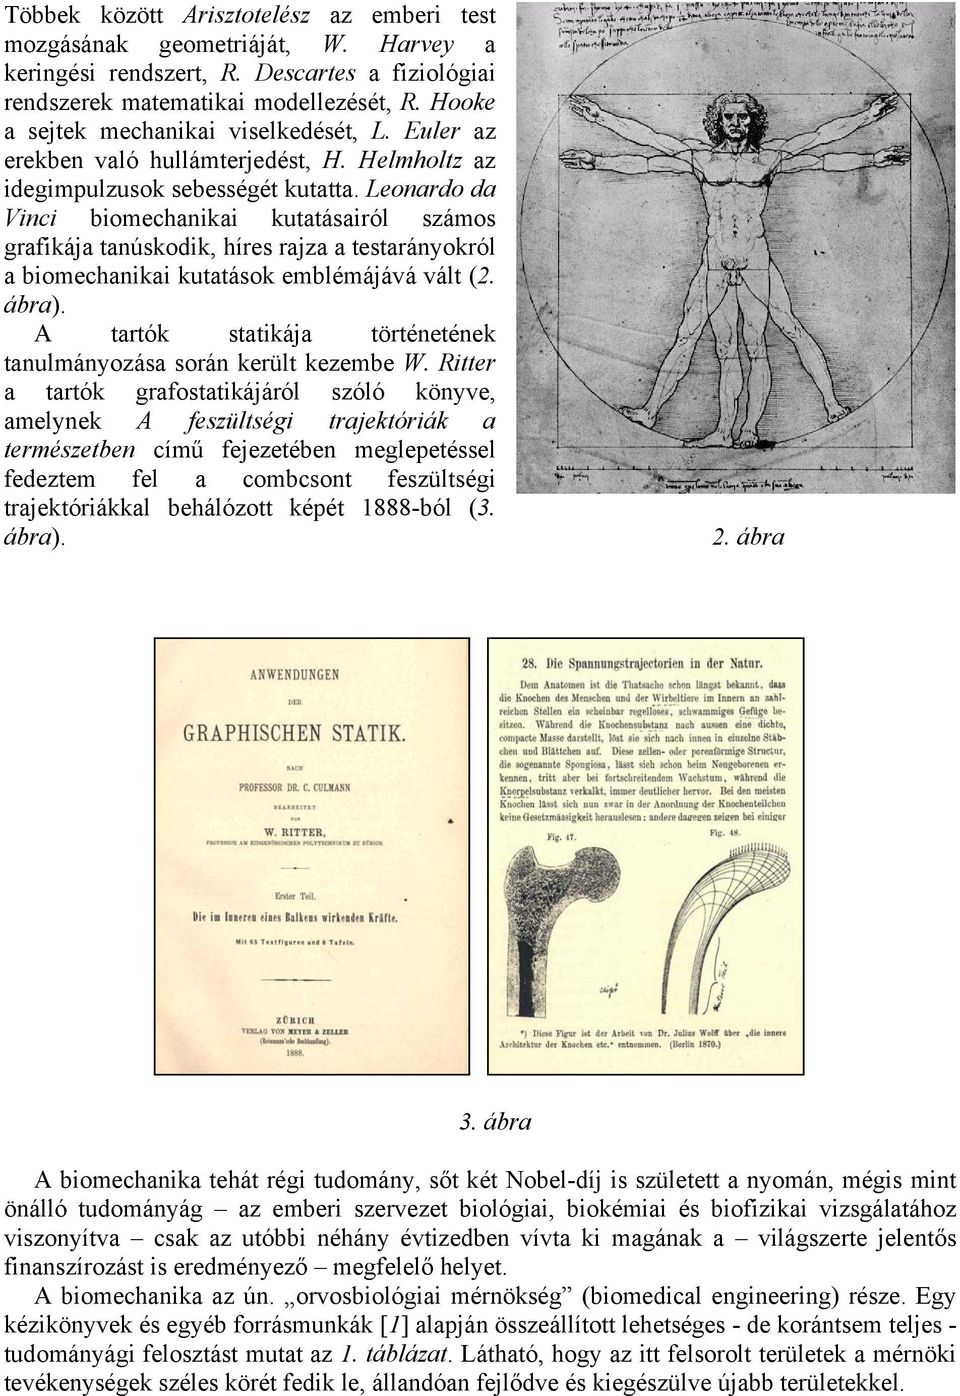 Leoaro a Vici biomechaikai kutatásairól számos grafikája taúskoik, híres rajza a testaráyokról a biomechaikai kutatások emblémájává vált (2. ábra).